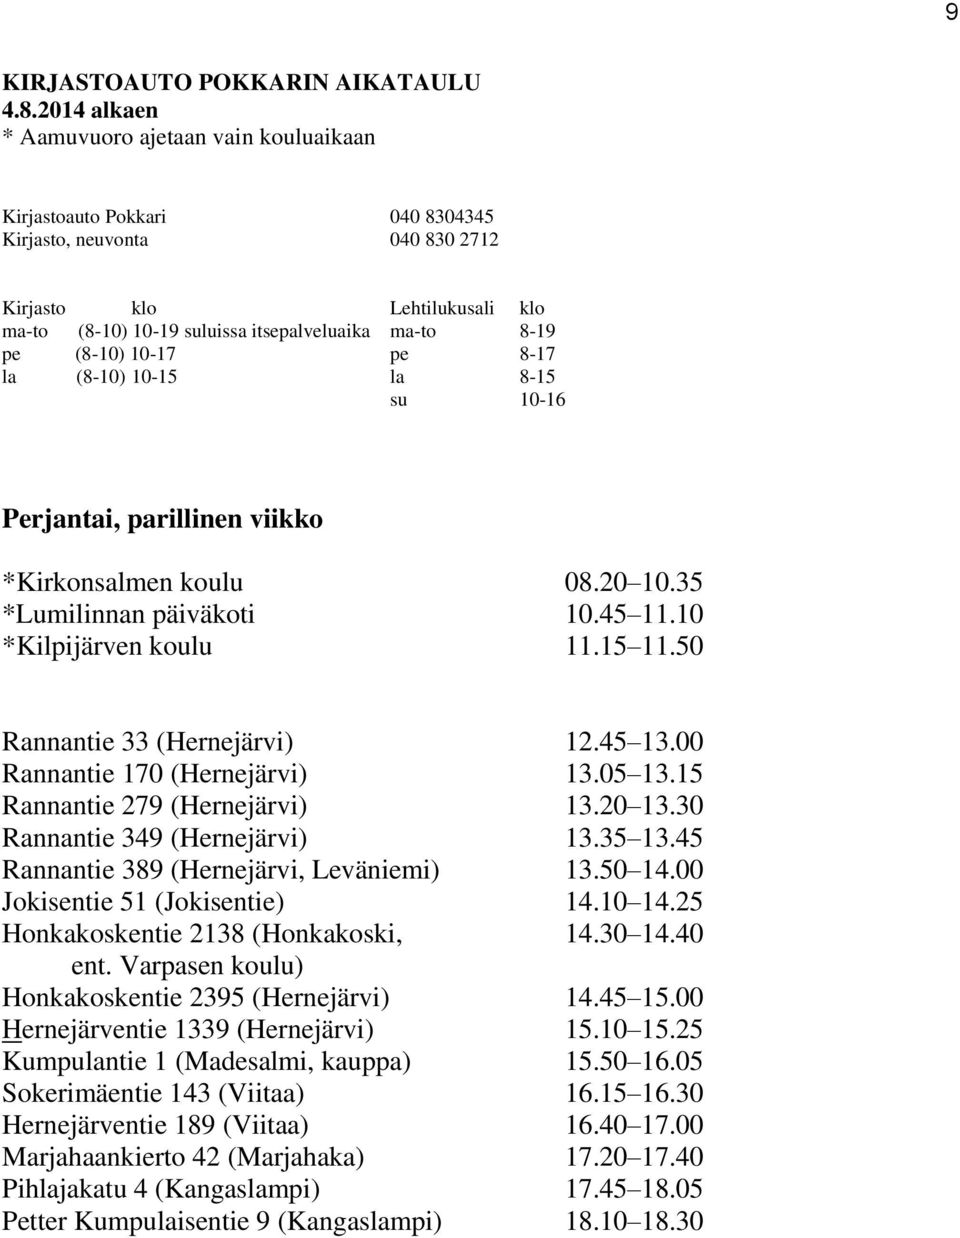 10 14.25 Honkakoskentie 2138 (Honkakoski, 14.30 14.40 ent. Varpasen koulu) Honkakoskentie 2395 (Hernejärvi) 14.45 15.00 Hernejärventie 1339 (Hernejärvi) 15.10 15.